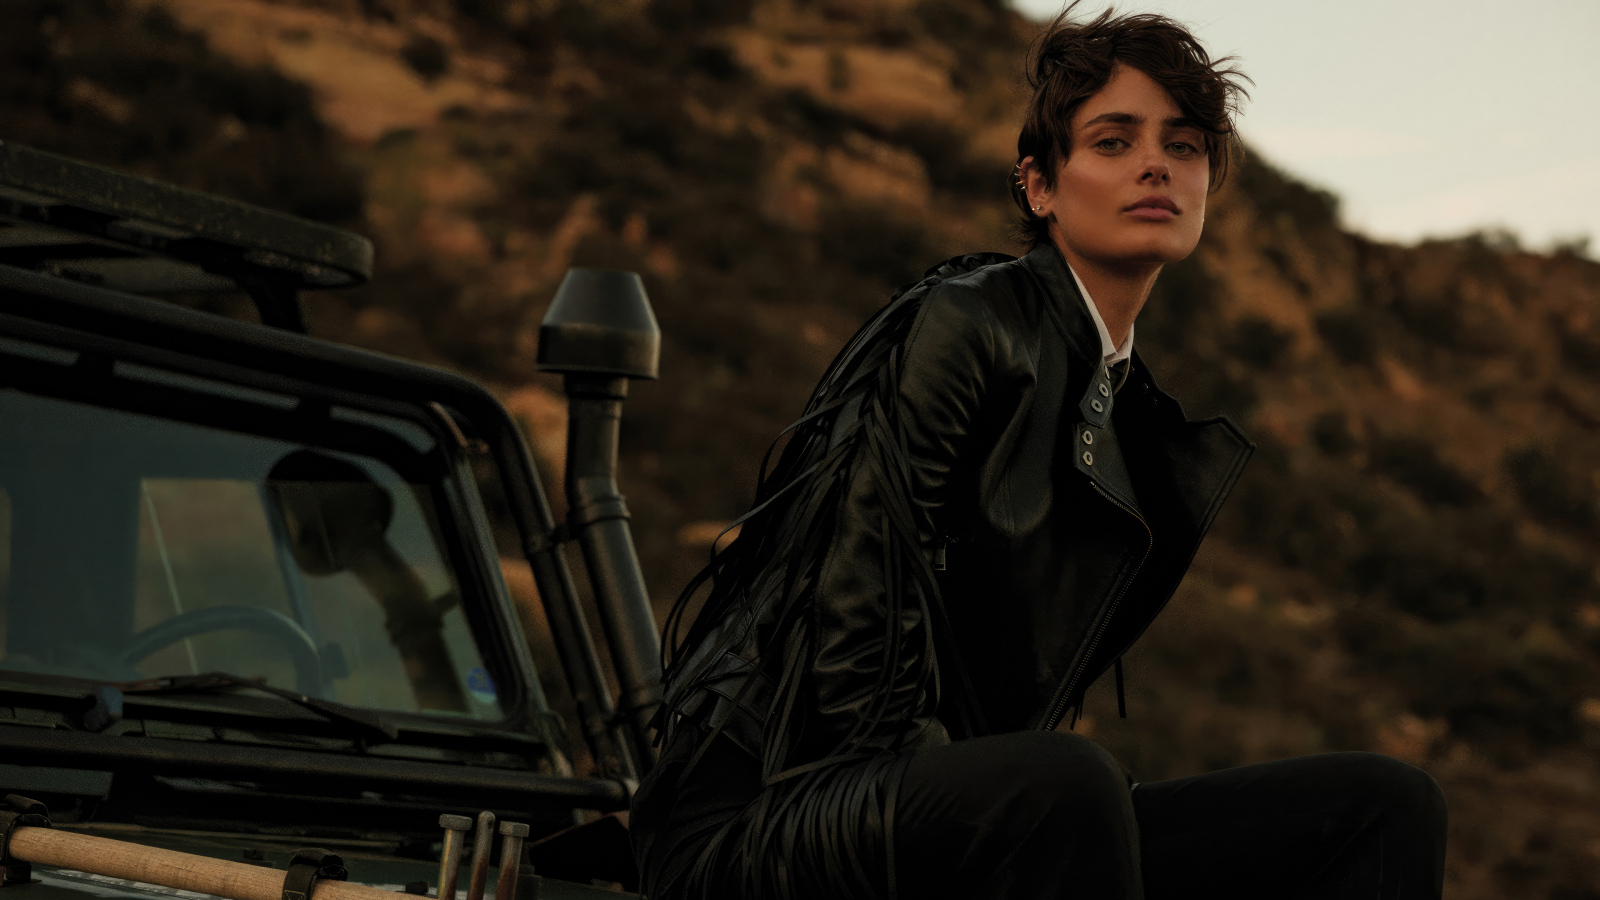 Модель Тейлор Хилл в черной куртке сидит на машине